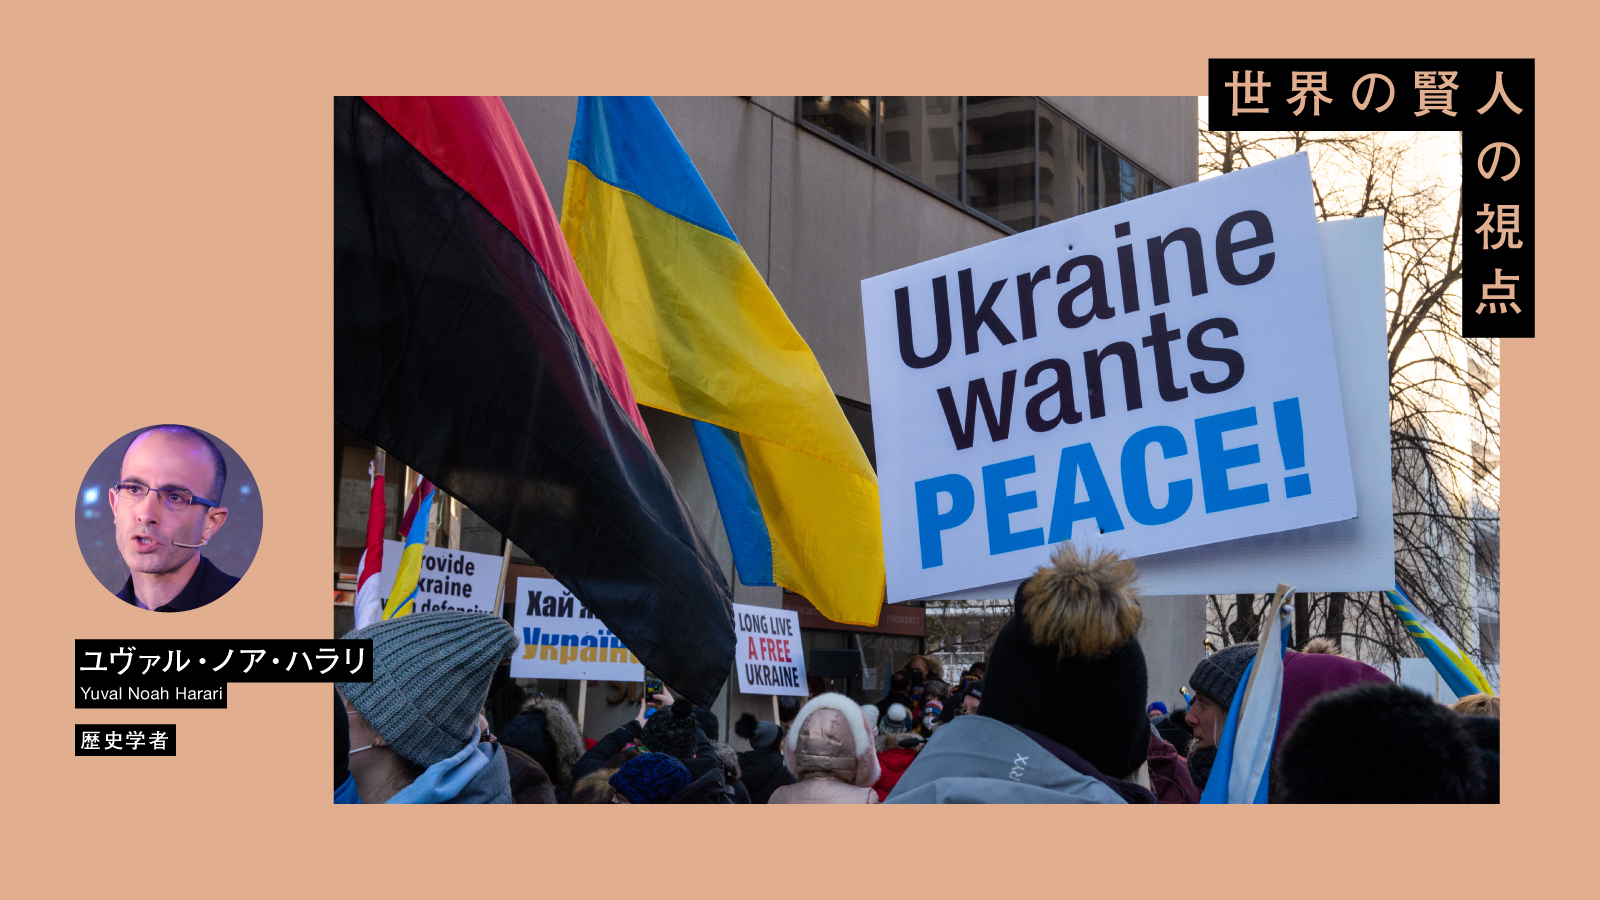 ユヴァル・ノア・ハラリ「ロシアのウクライナ侵攻を地球上のあらゆる人が懸念すべき理由」 | 悲劇が繰り返されるかは、人間の選択にかかっている